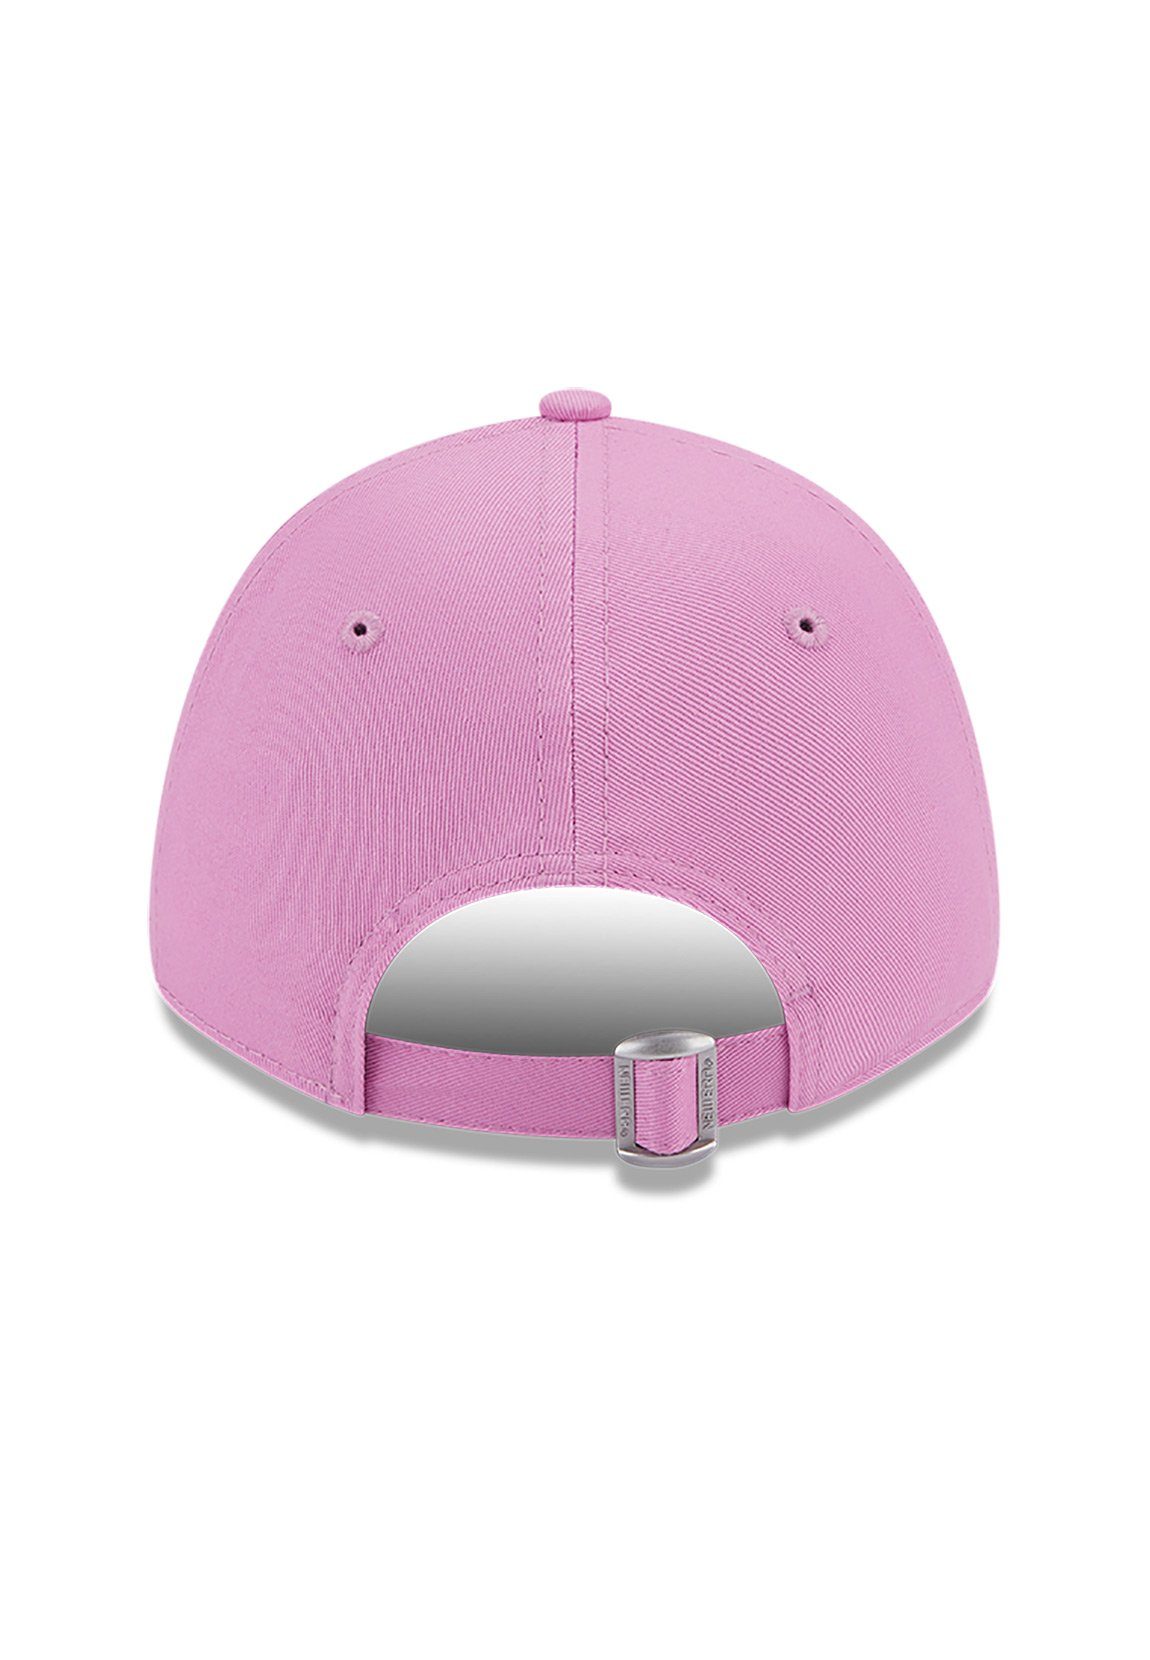 Wmns Baseball YANKEES Pink Era Damen Cap League Era New New rosa 9Forty Ess Cap NY Adjustable